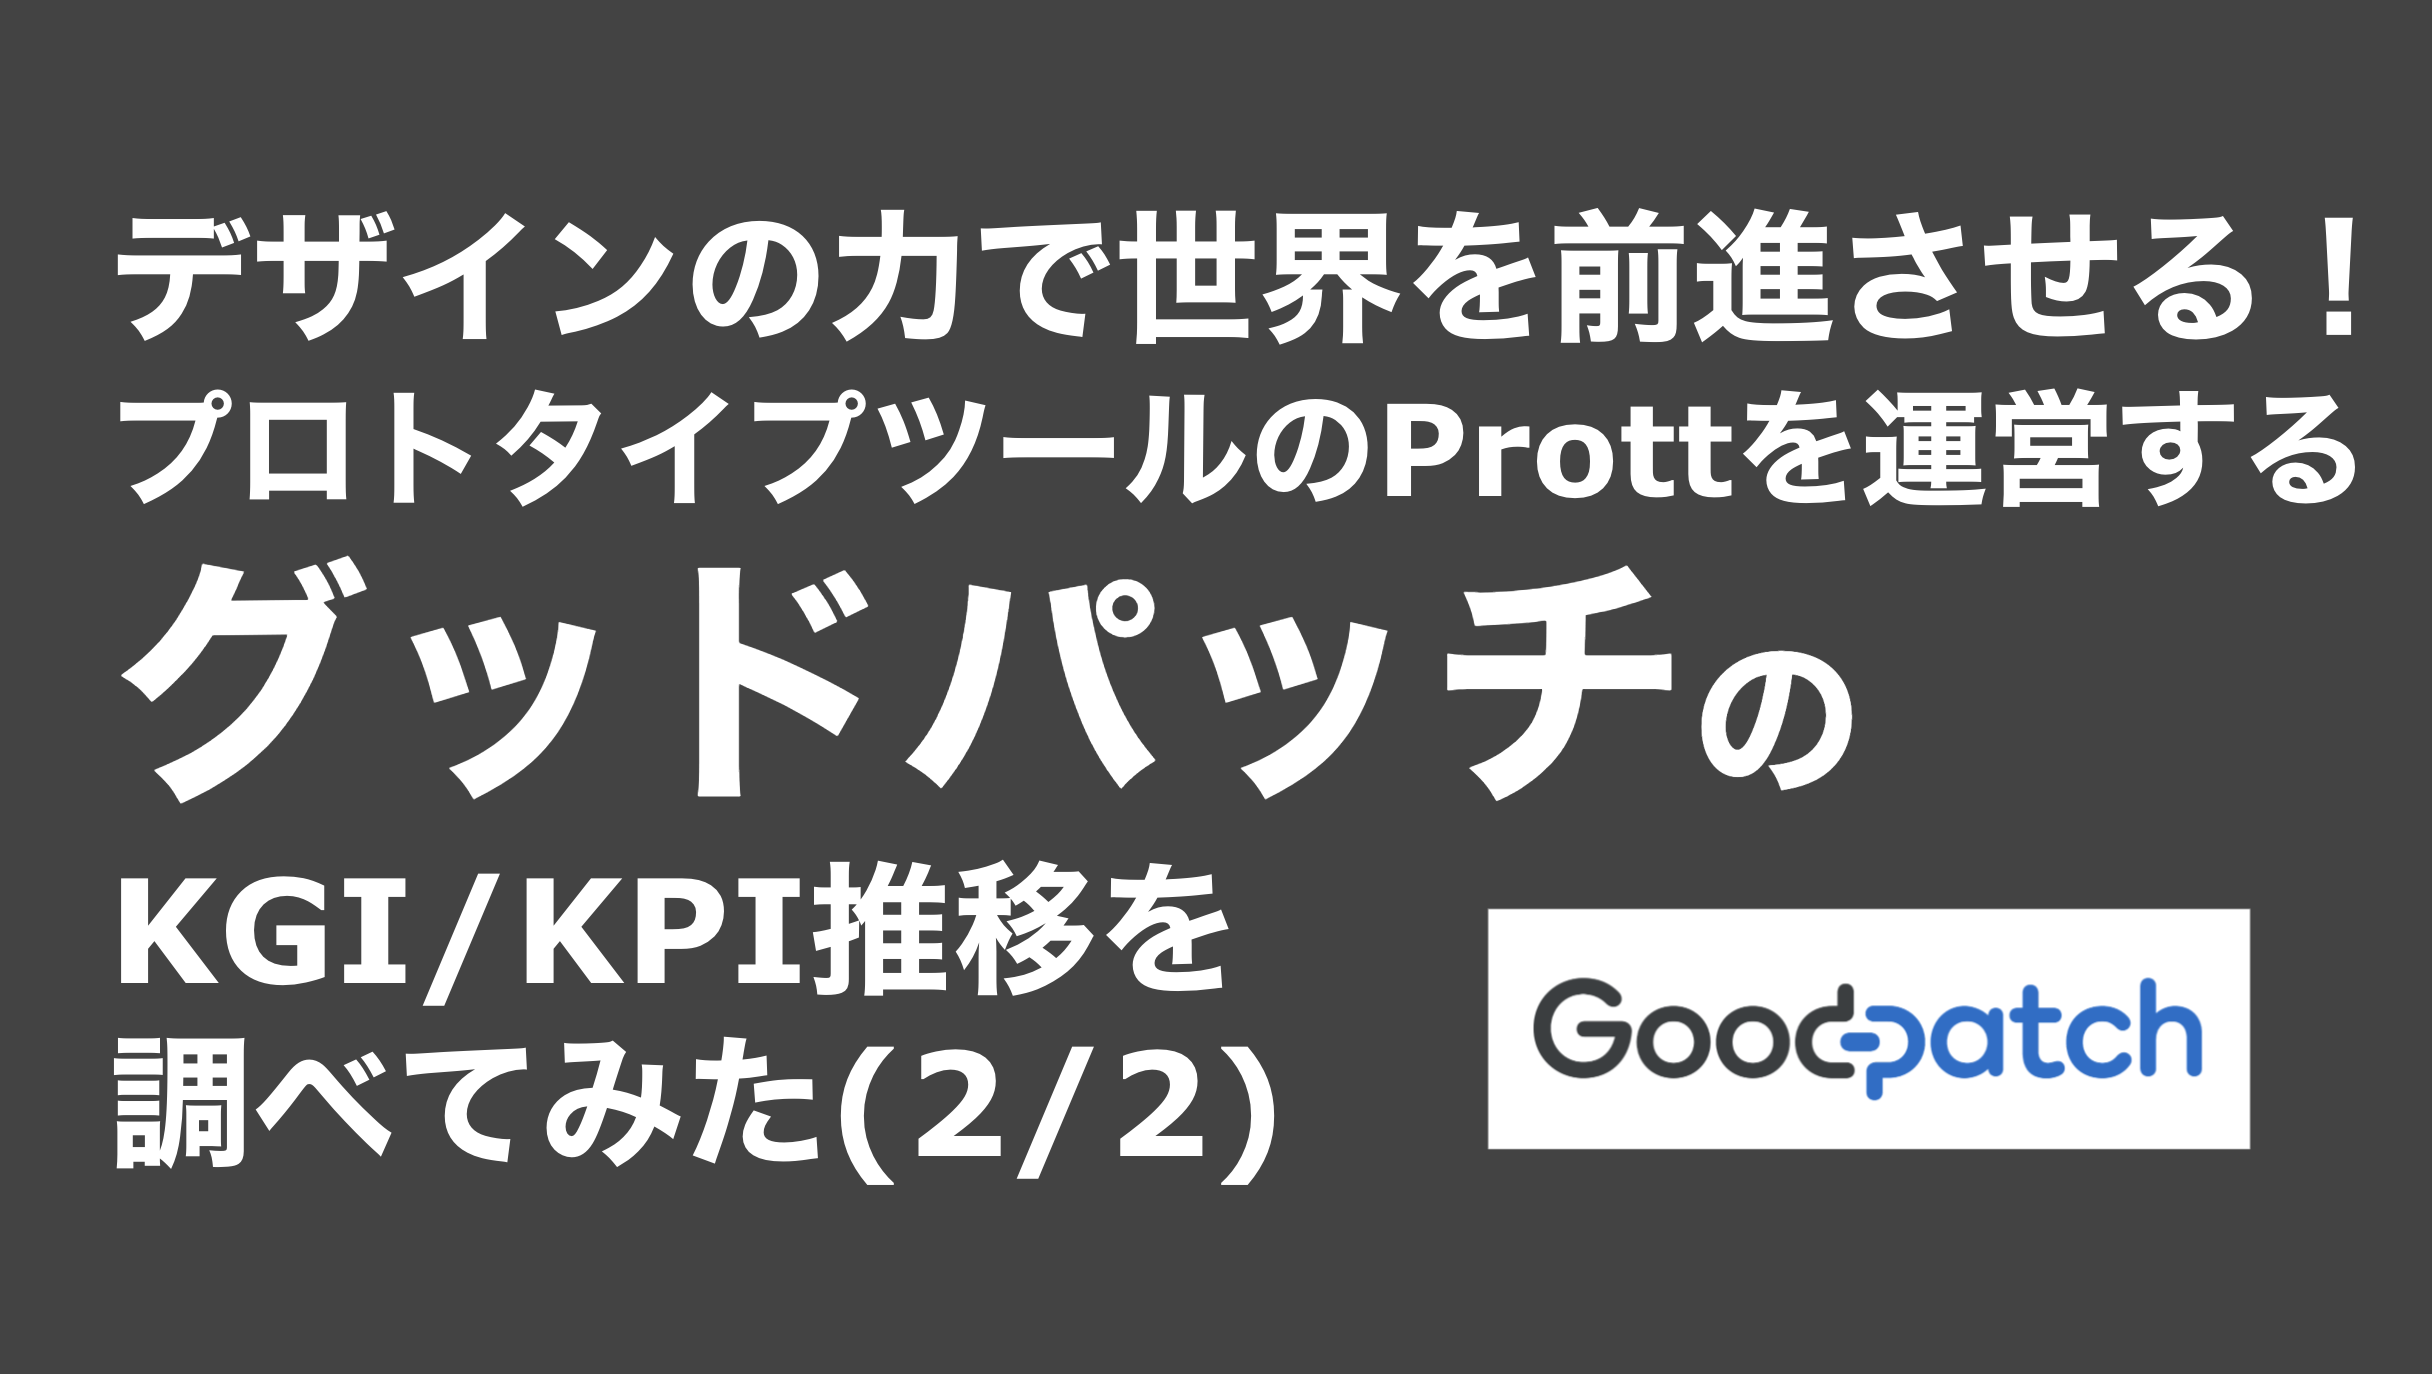 saaslife_デザインの力で世界を前進させる！プロトタイプツールのProttを運営するグッドパッチのKGI/KPI推移を調べてみた(2/2)